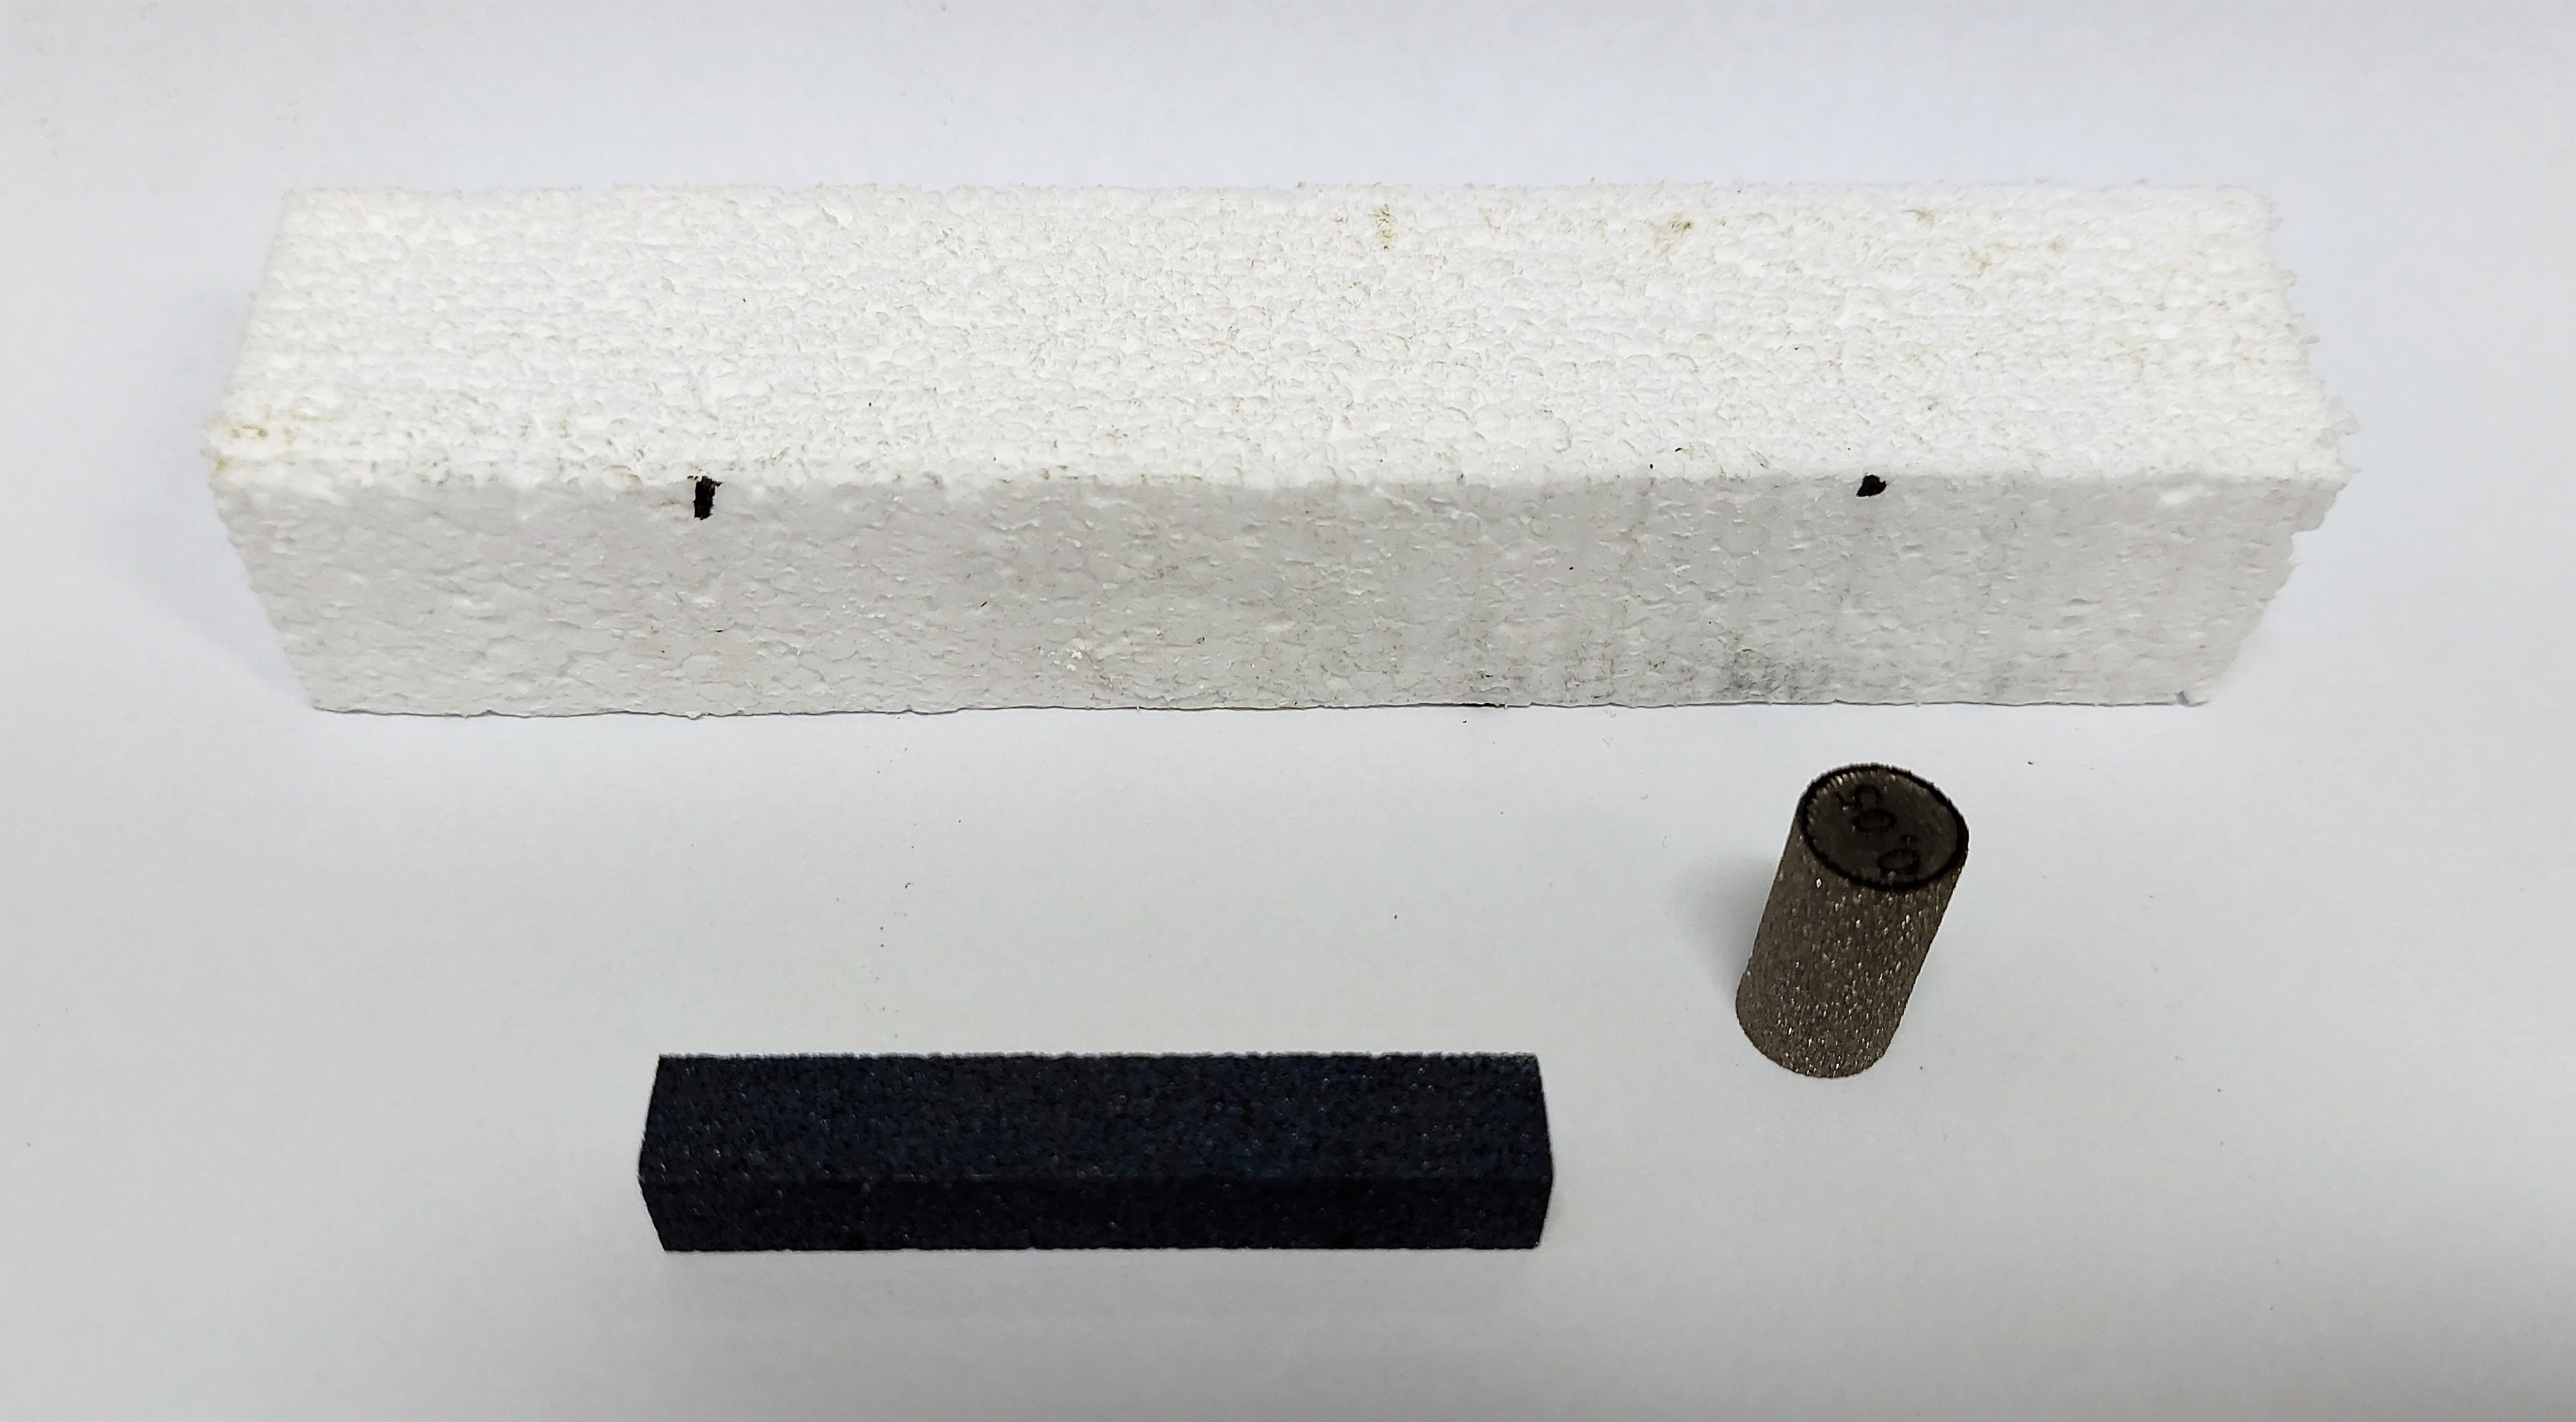 especímenes de titanio poroso y un espécimen de poliestireno expandido (EPS / Esferovite).